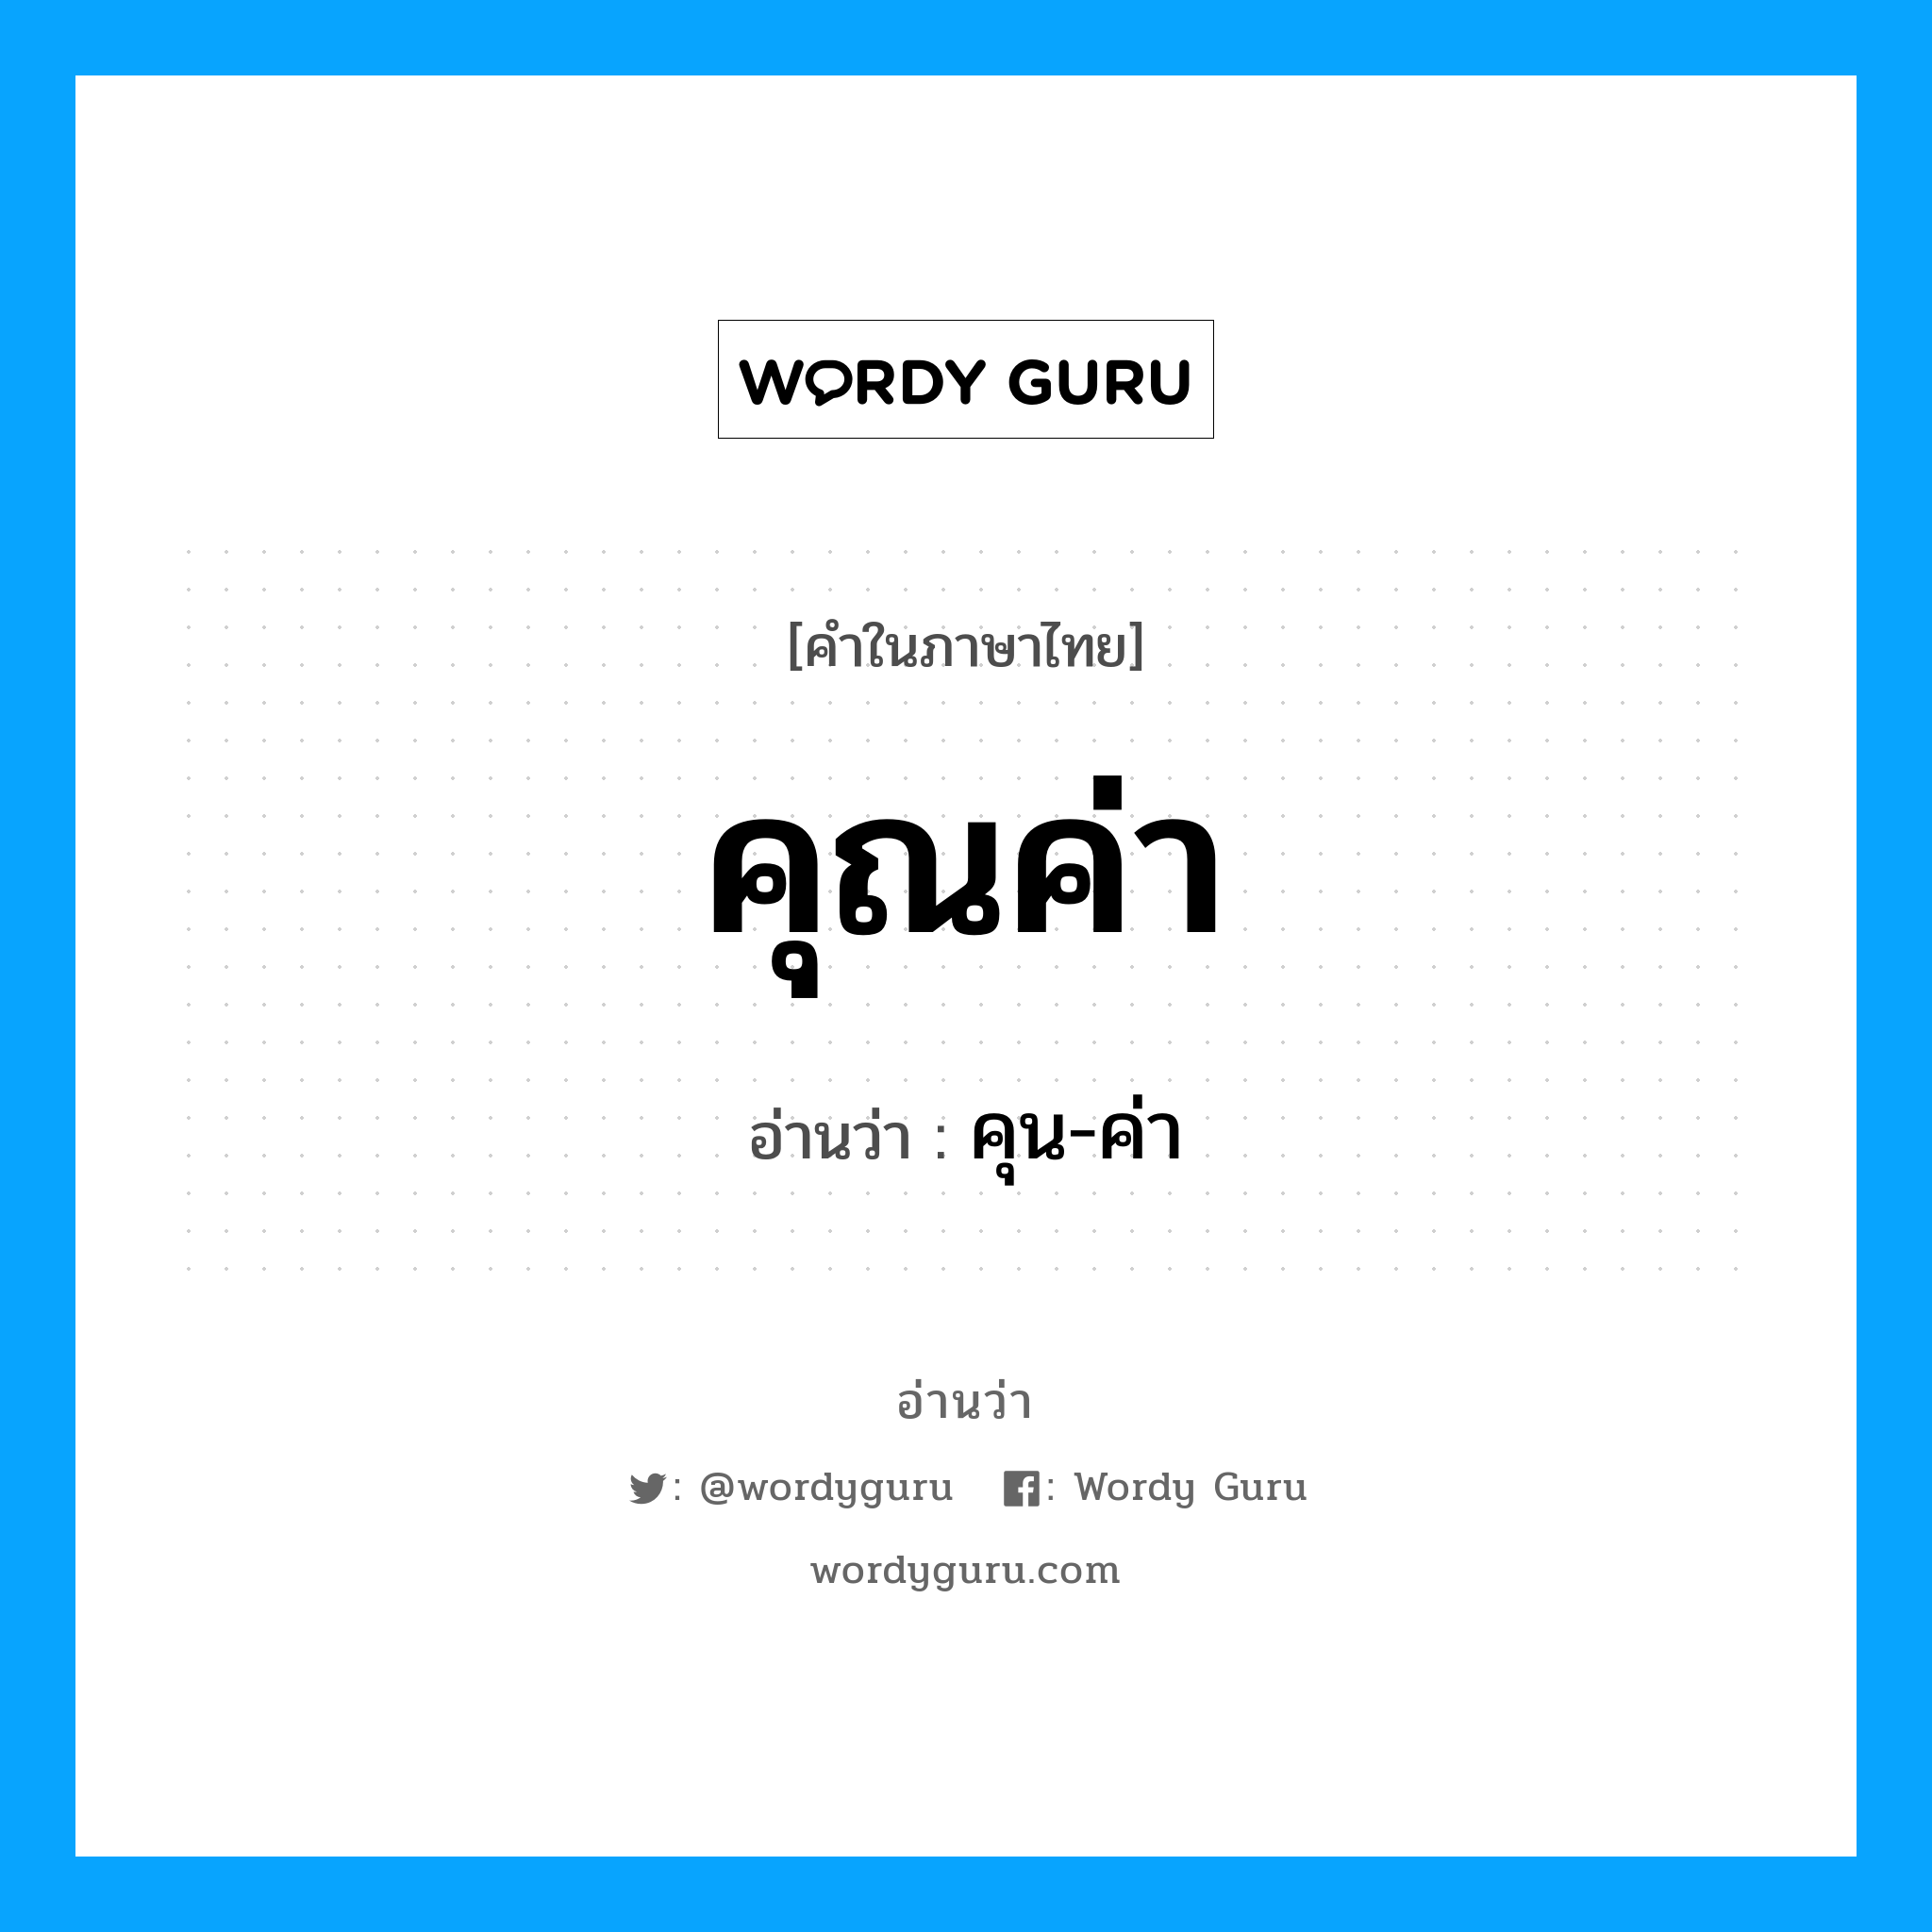 คุน-ค่า เป็นคำอ่านของคำไหน?, คำในภาษาไทย คุน-ค่า อ่านว่า คุณค่า